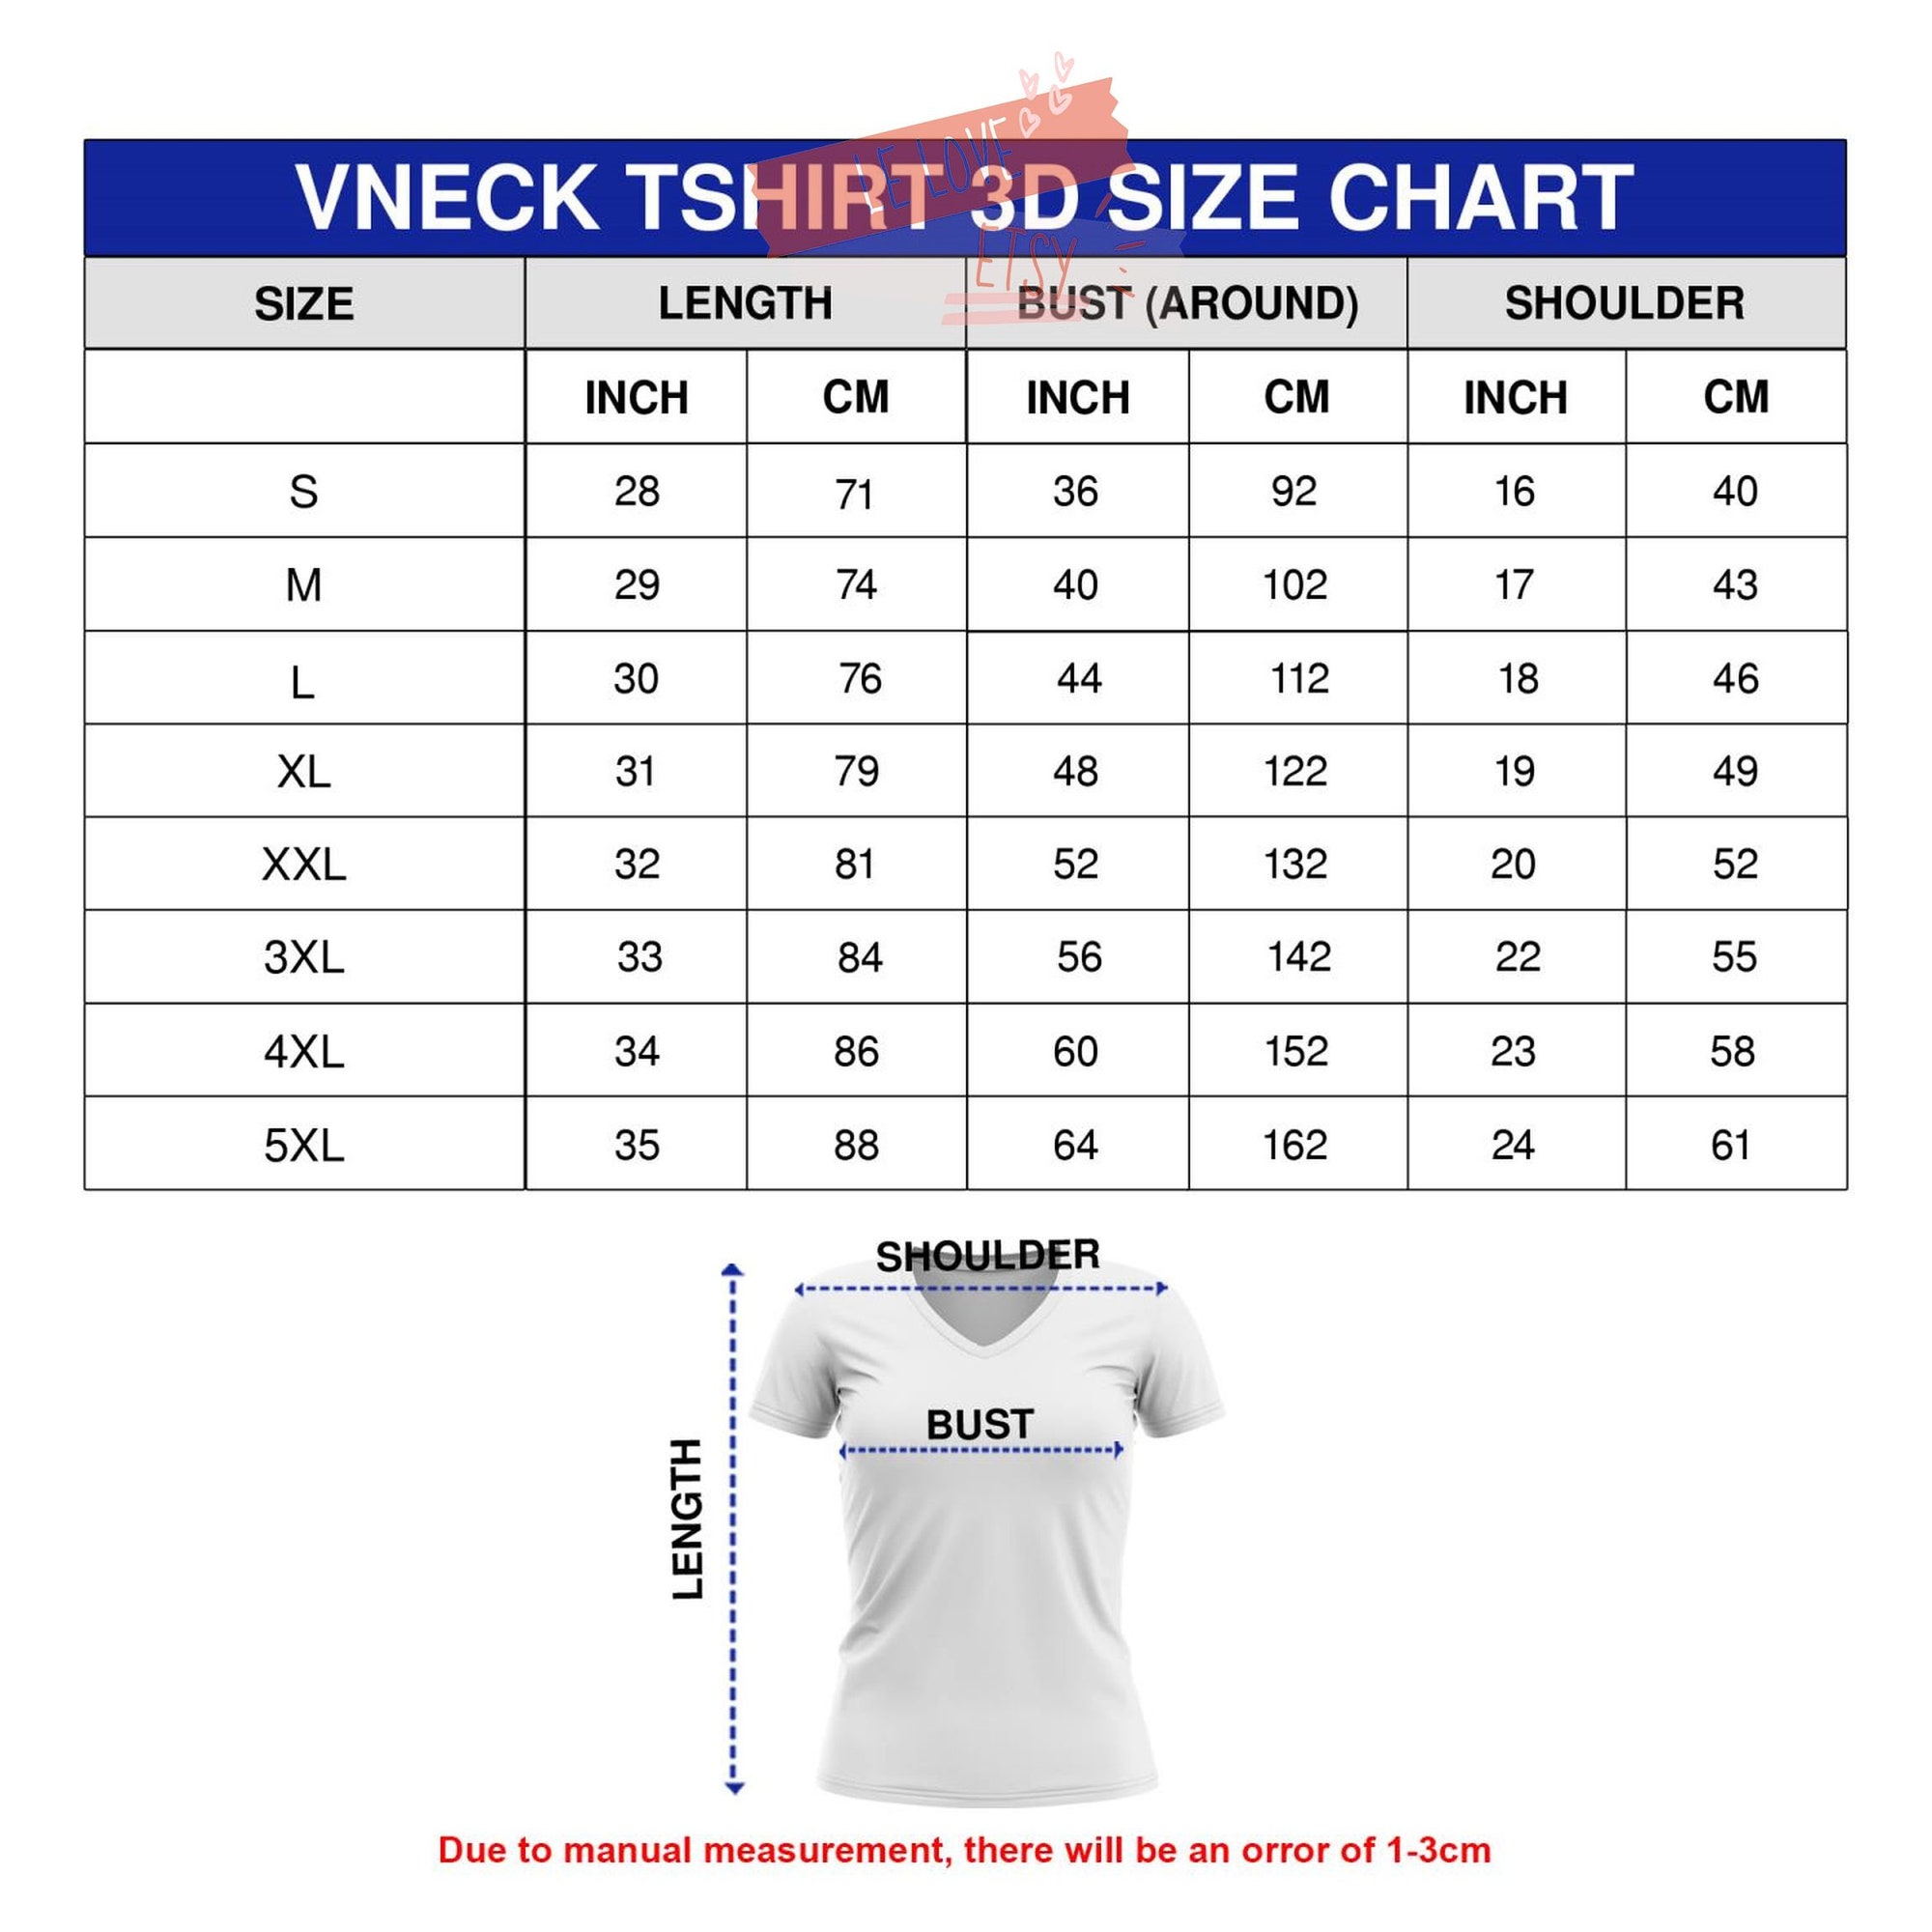 Kizz Rock Shirt 3D, Rock Band Shirt 3D